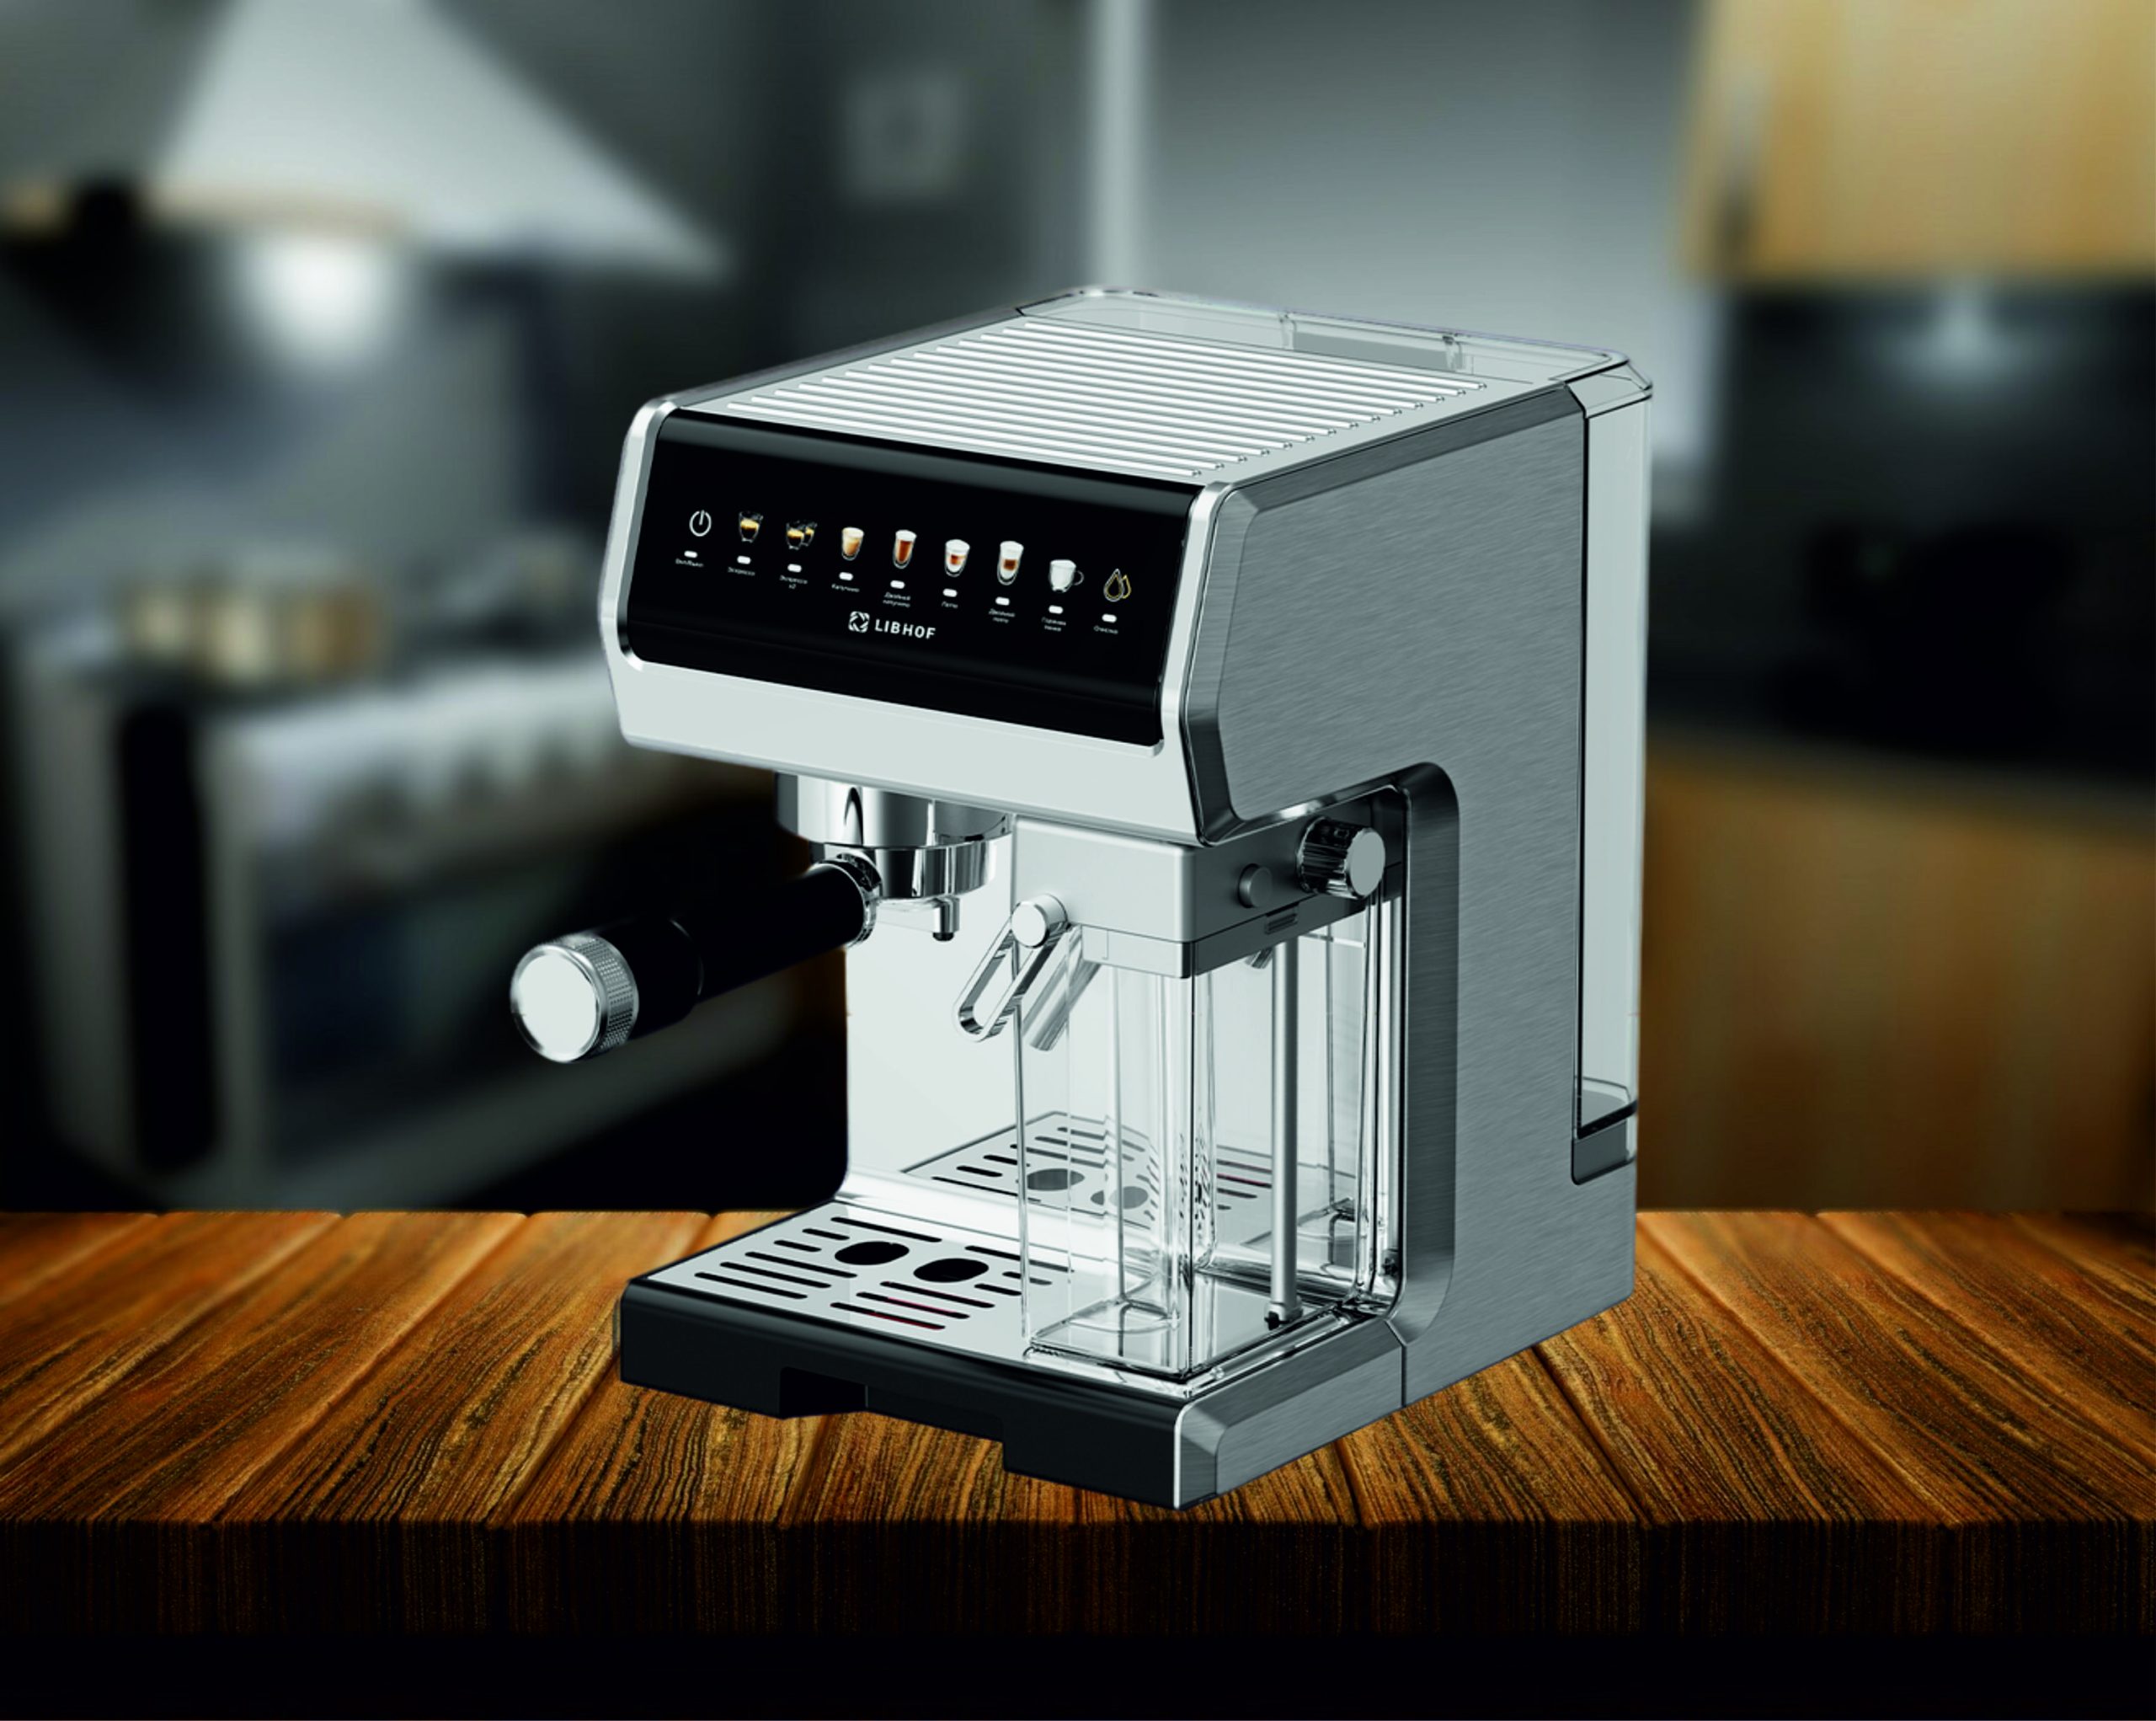 Новая модель кофеварки от Libhof!